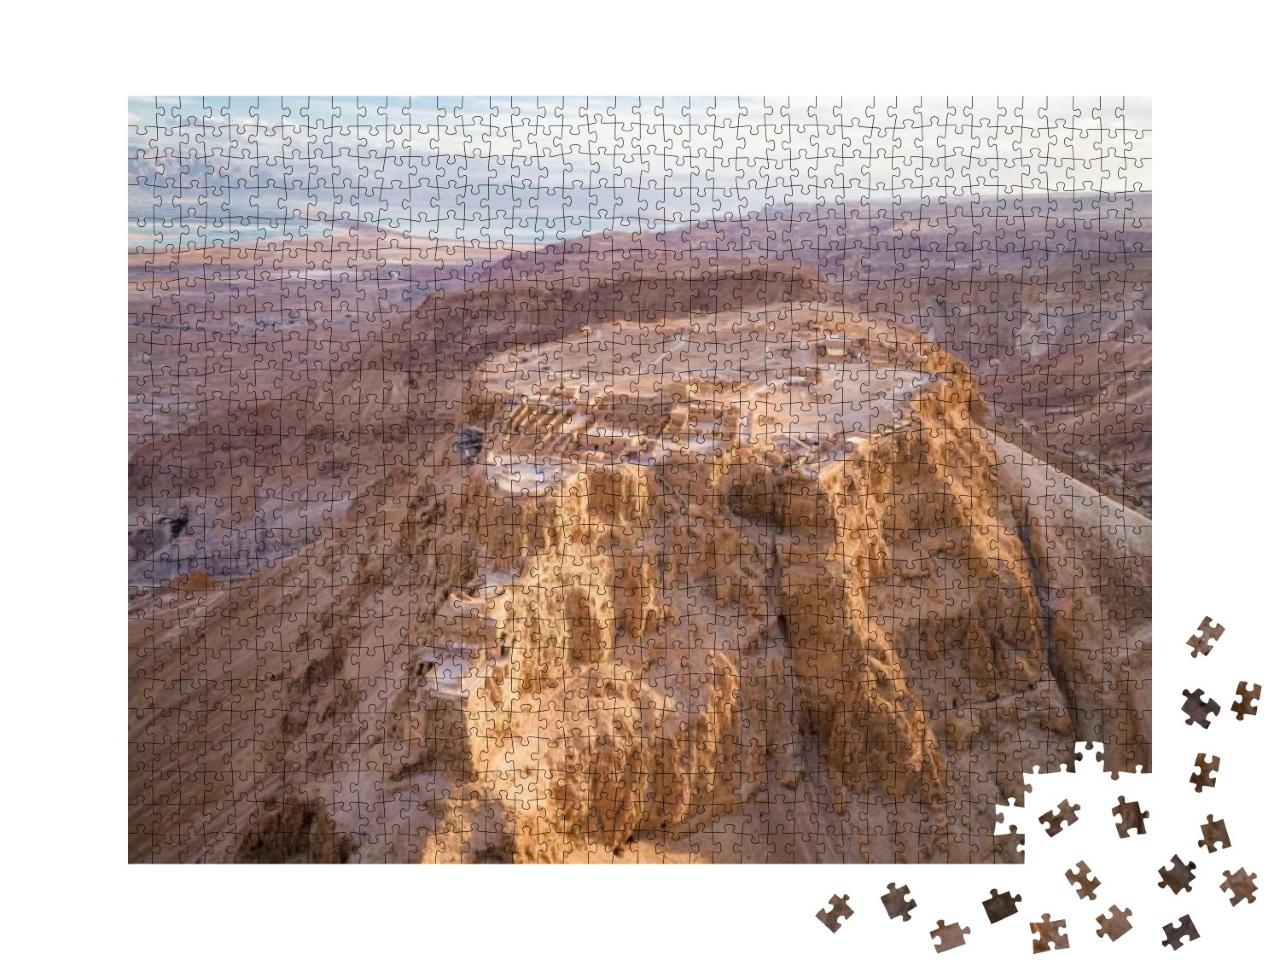 Puzzle 1000 Teile „Die Festung von Masada in der Region des Toten Meeres, Israel“